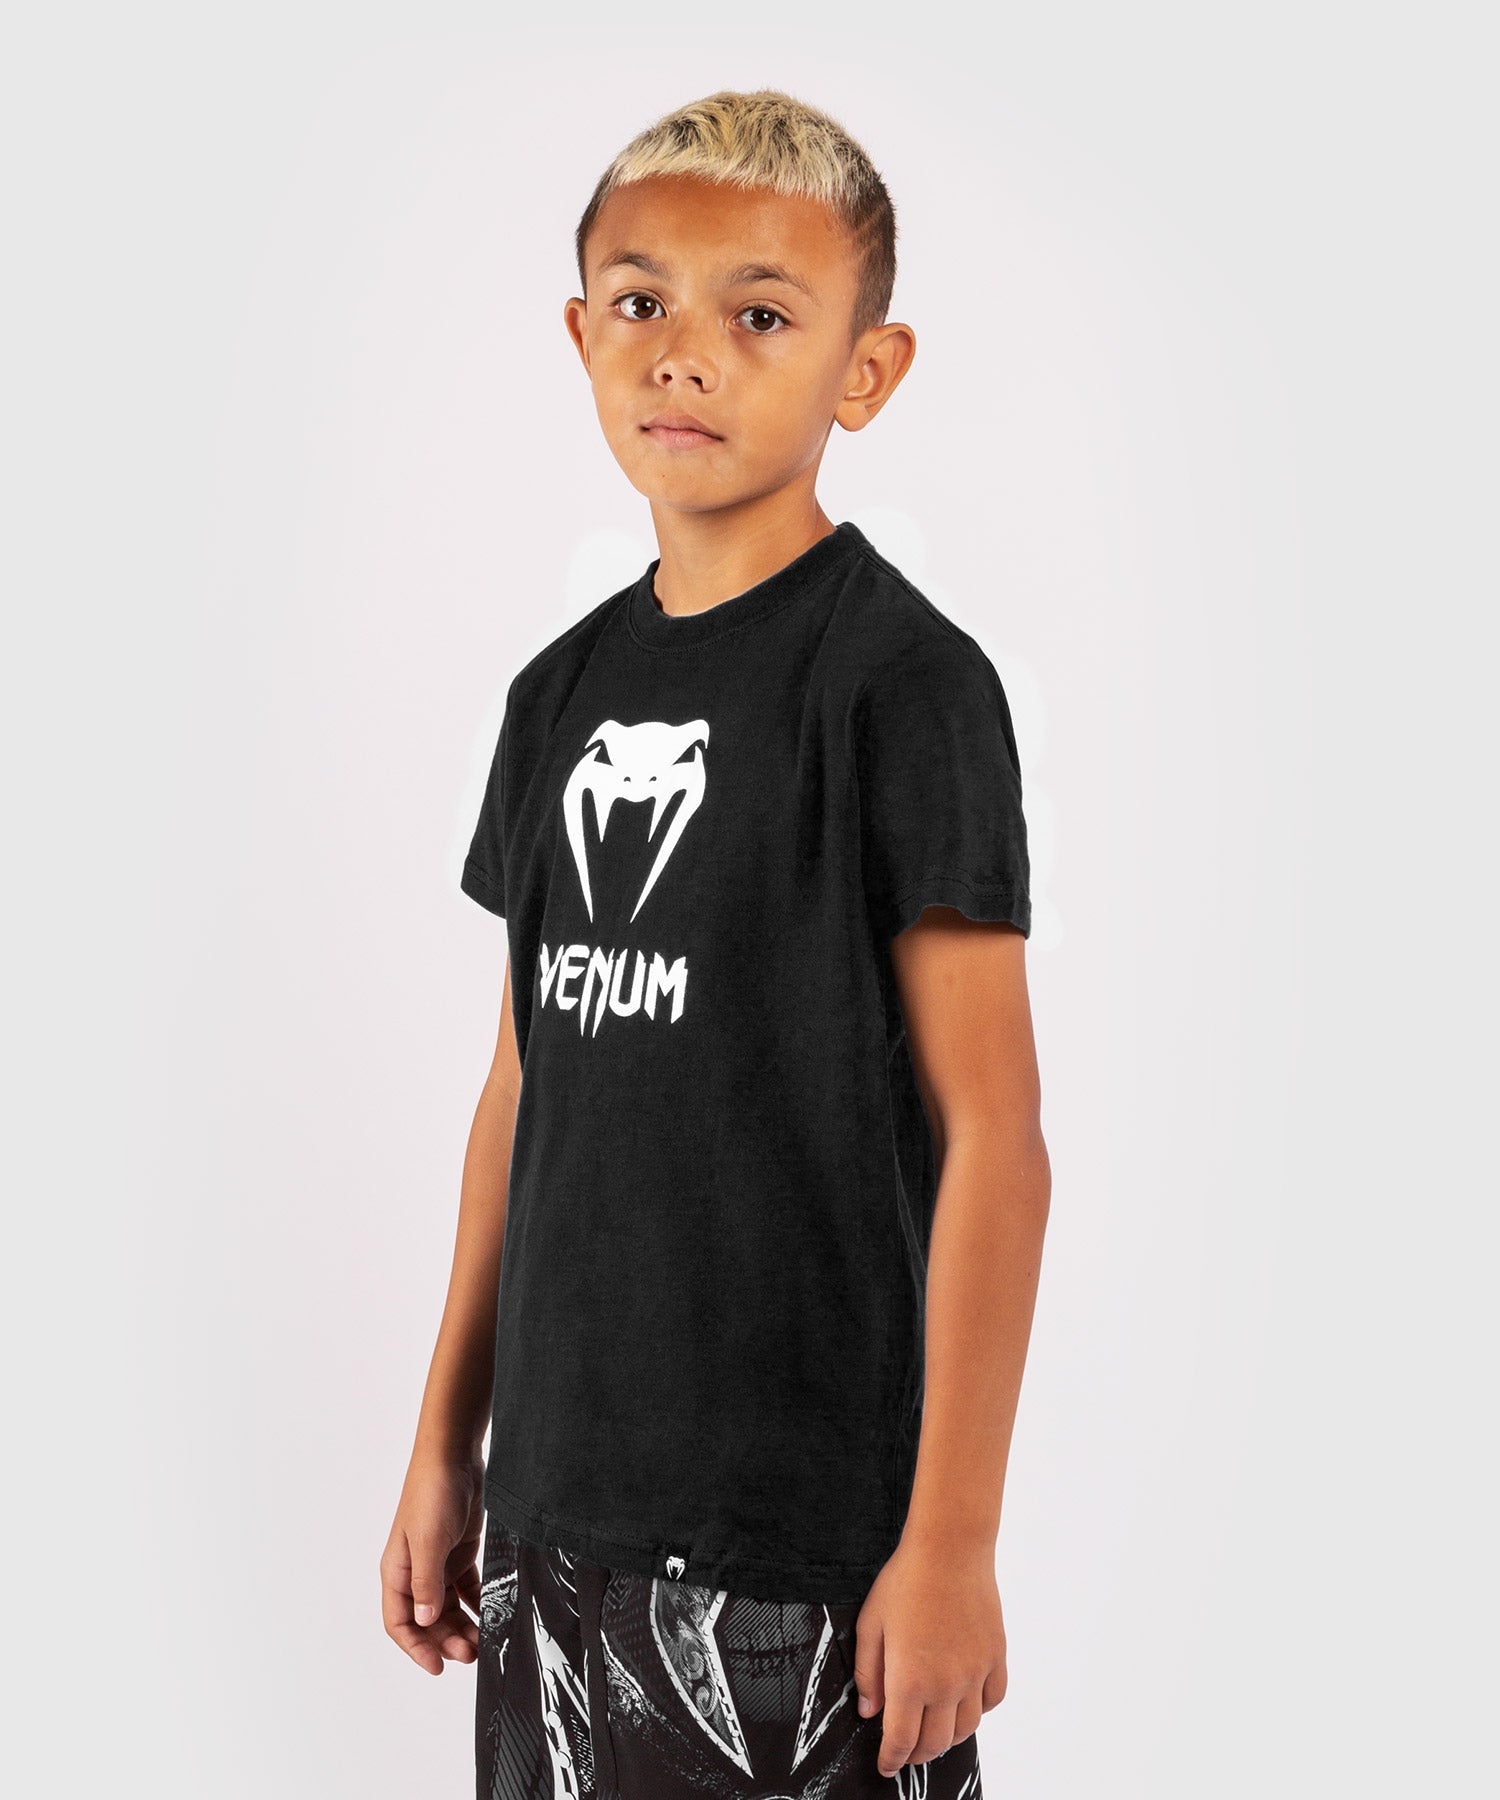 Venum Classic T-shirt - Kids - - Asia Venum Black